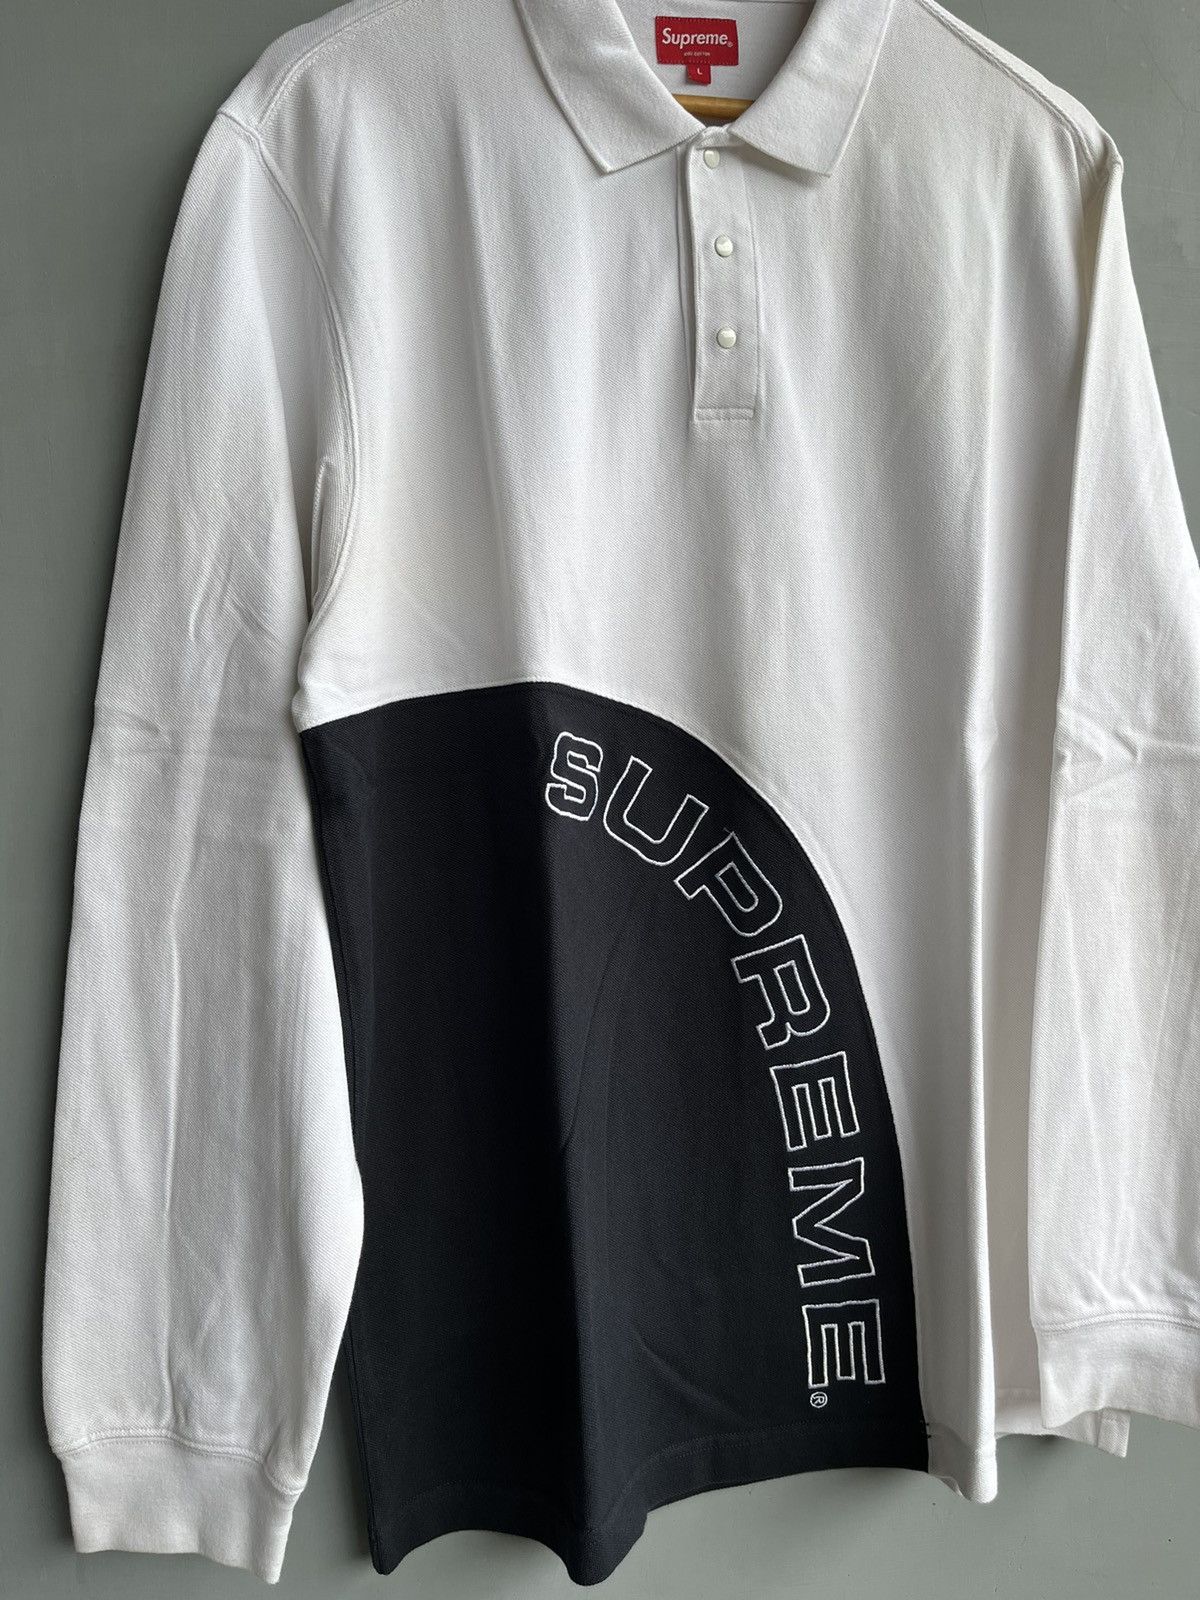 Supreme Supreme Corner Arc Polo Long Sleeve Shirt SS18 | Grailed